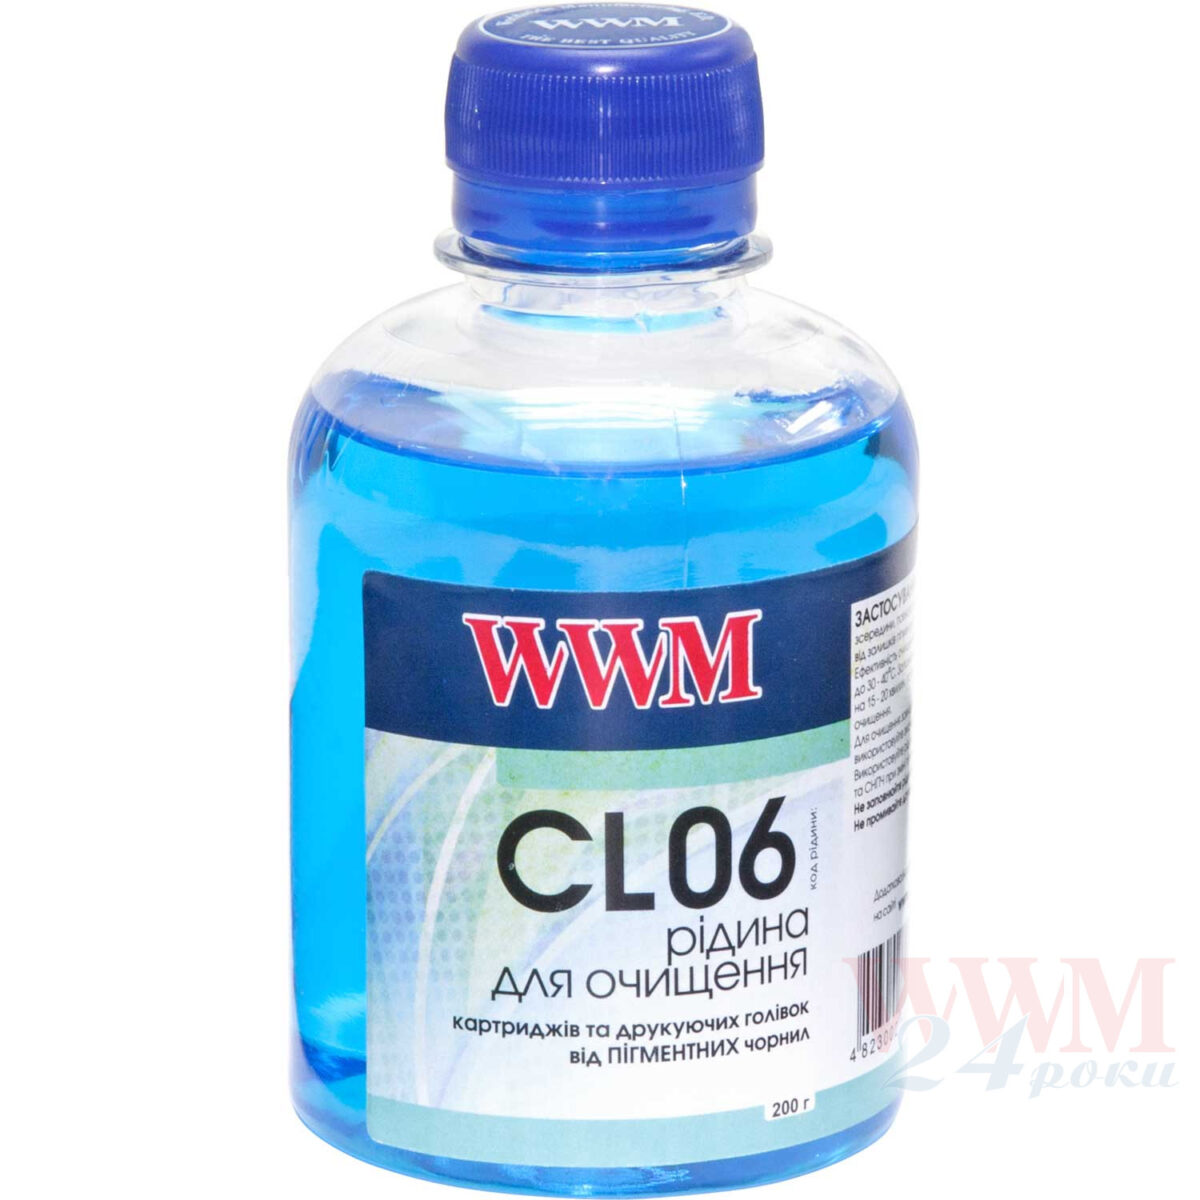 CL06 200 | INPRINT COM